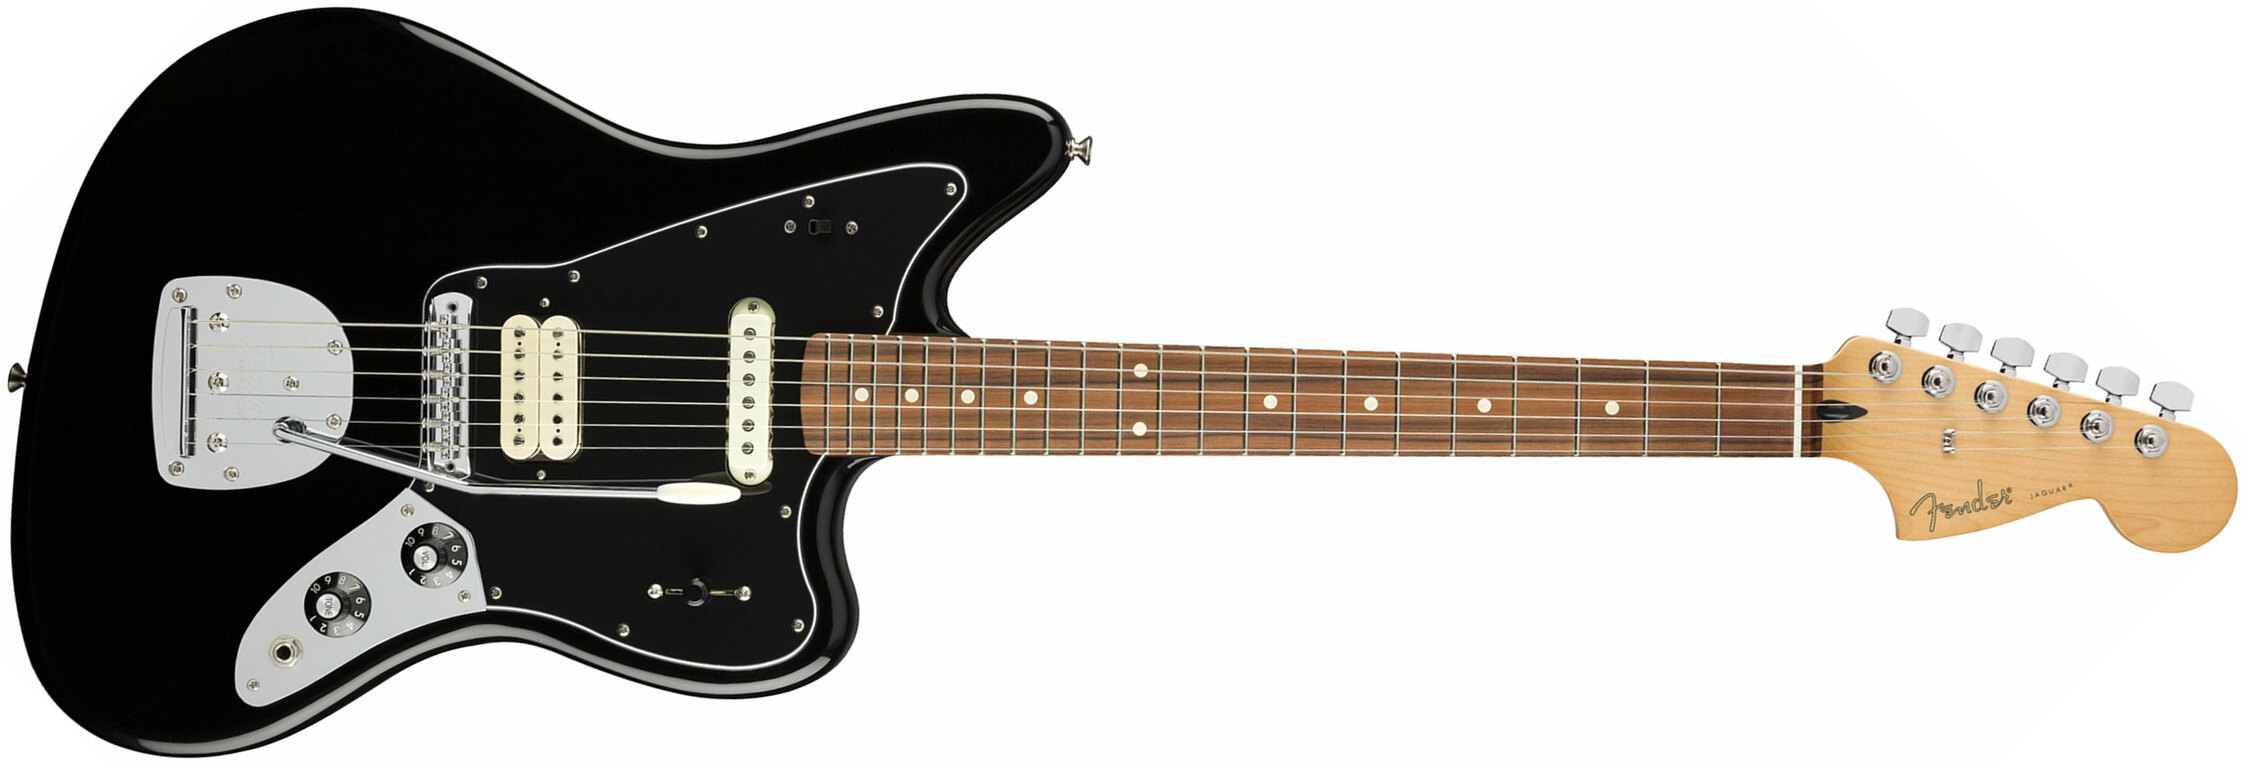 Fender Jaguar Player Mex Hs Pf - Black - Retro rock electric guitar - Main picture